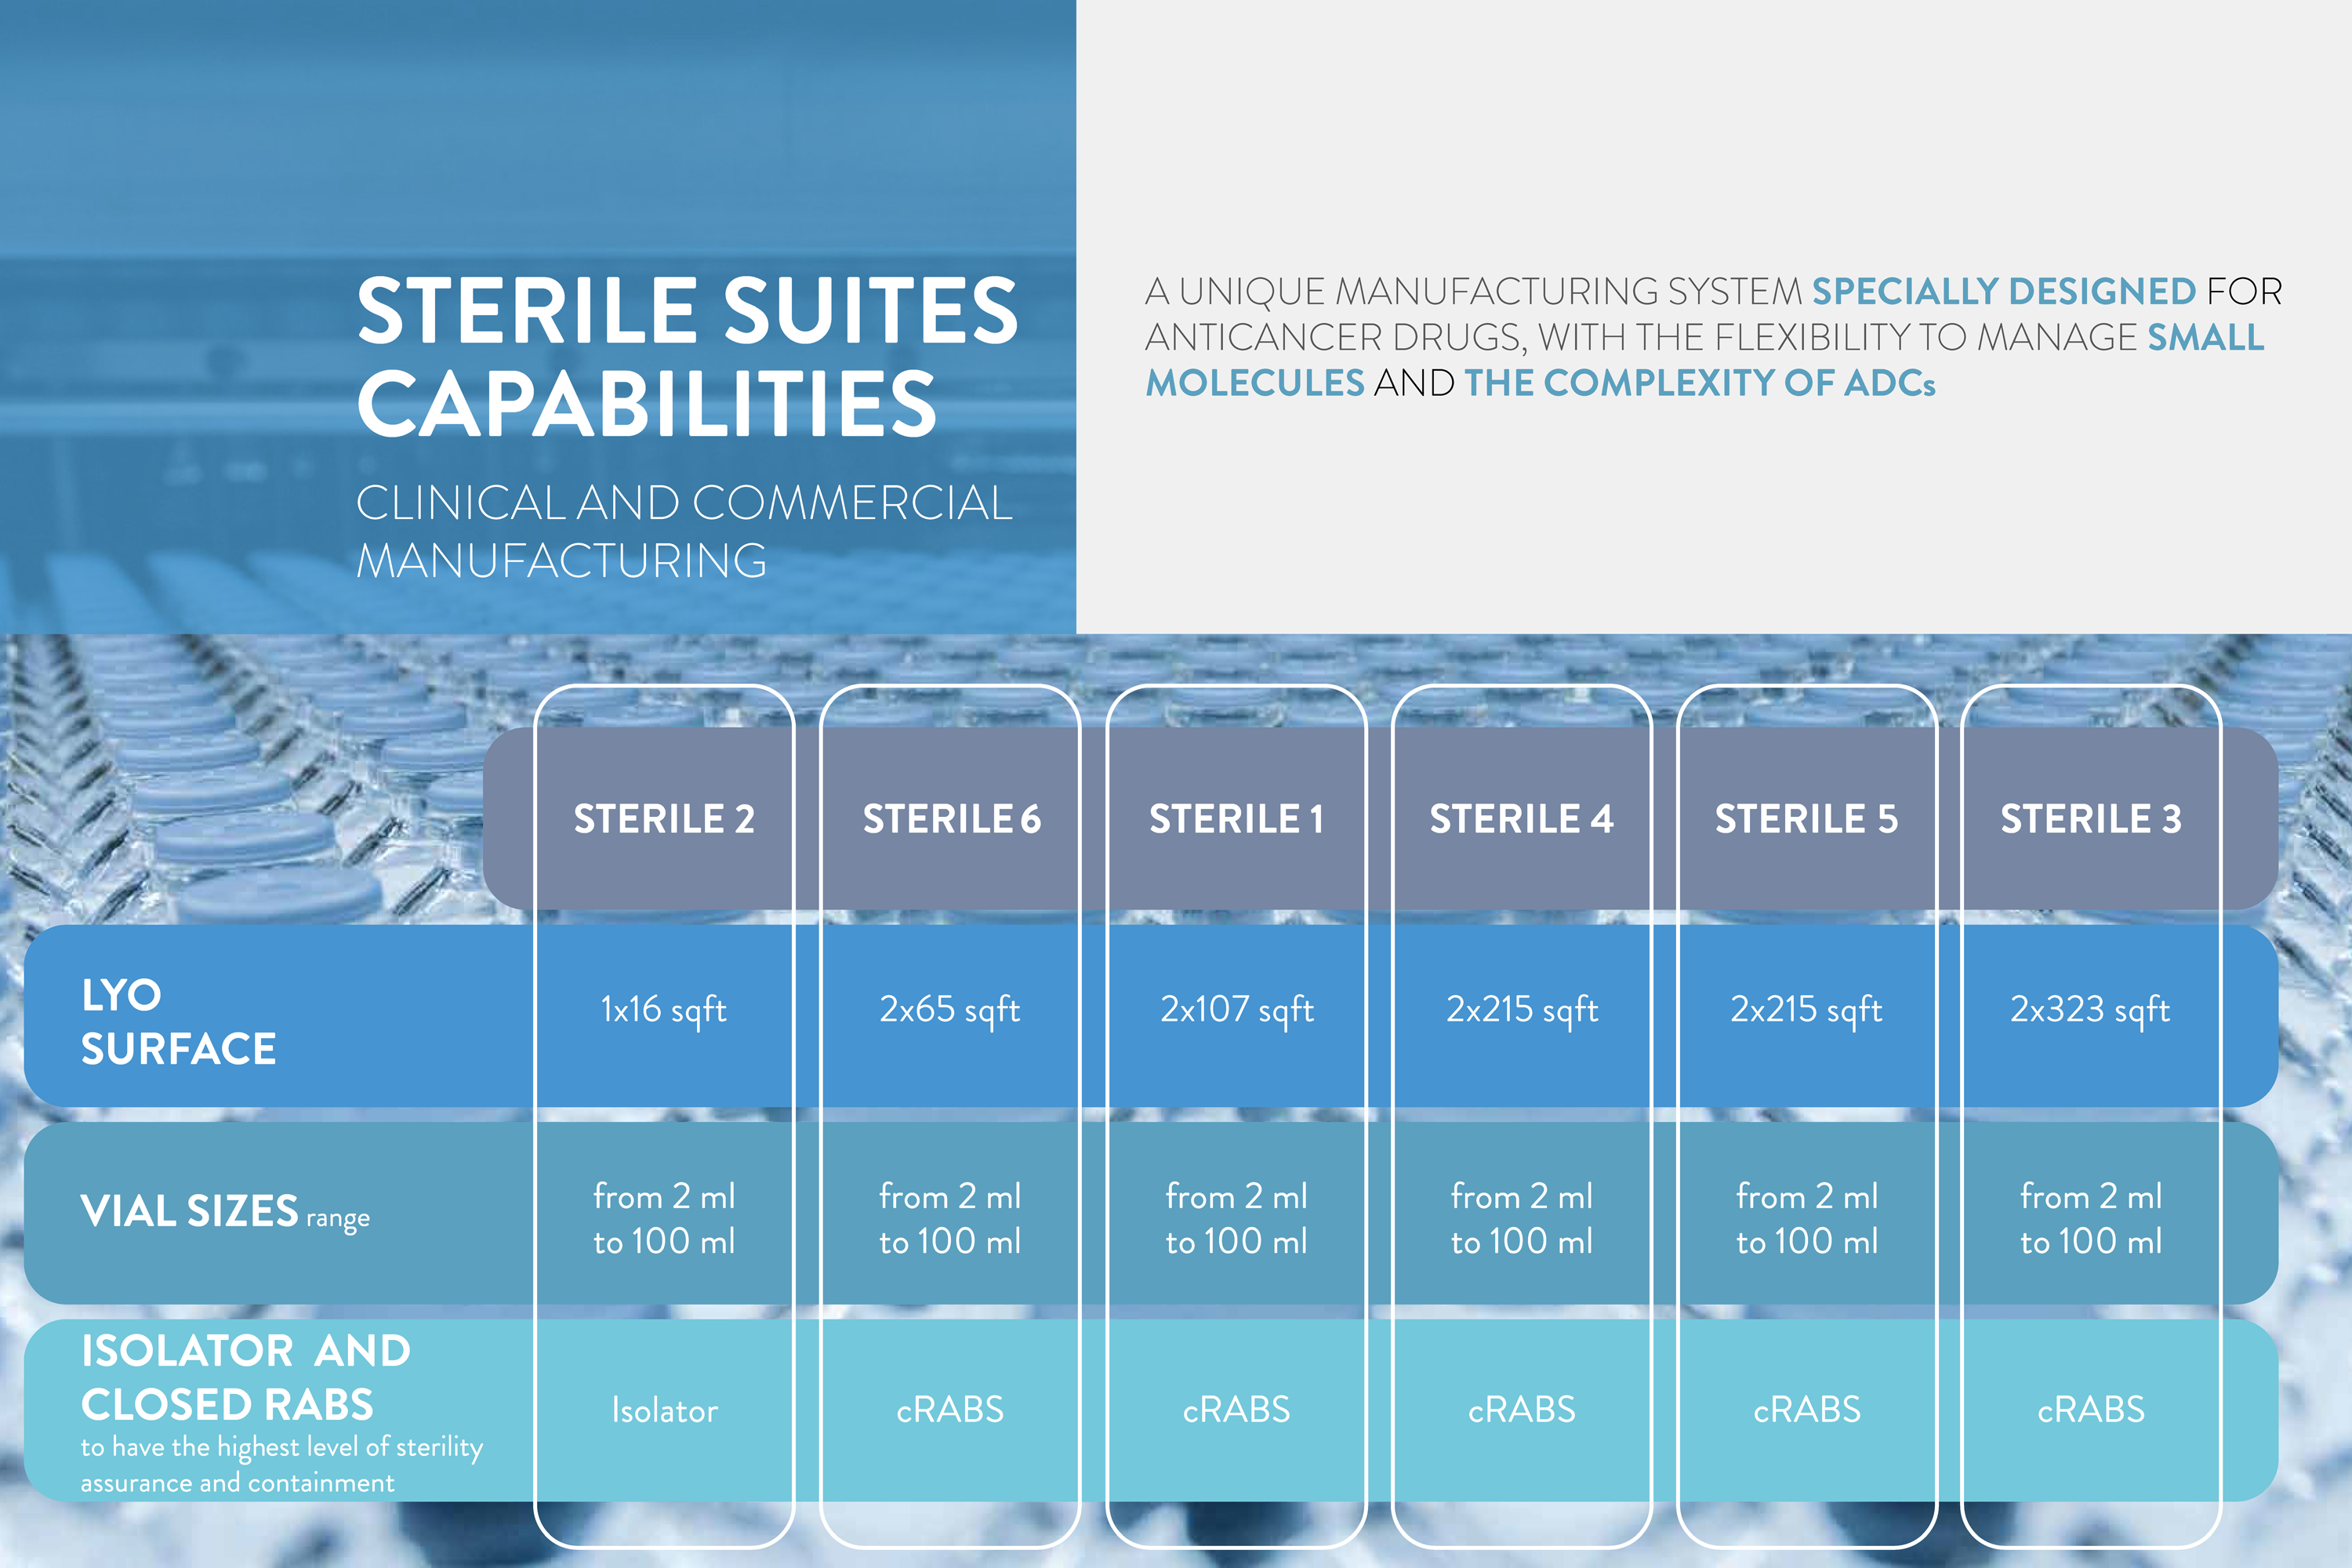 Sterile suites capabilities